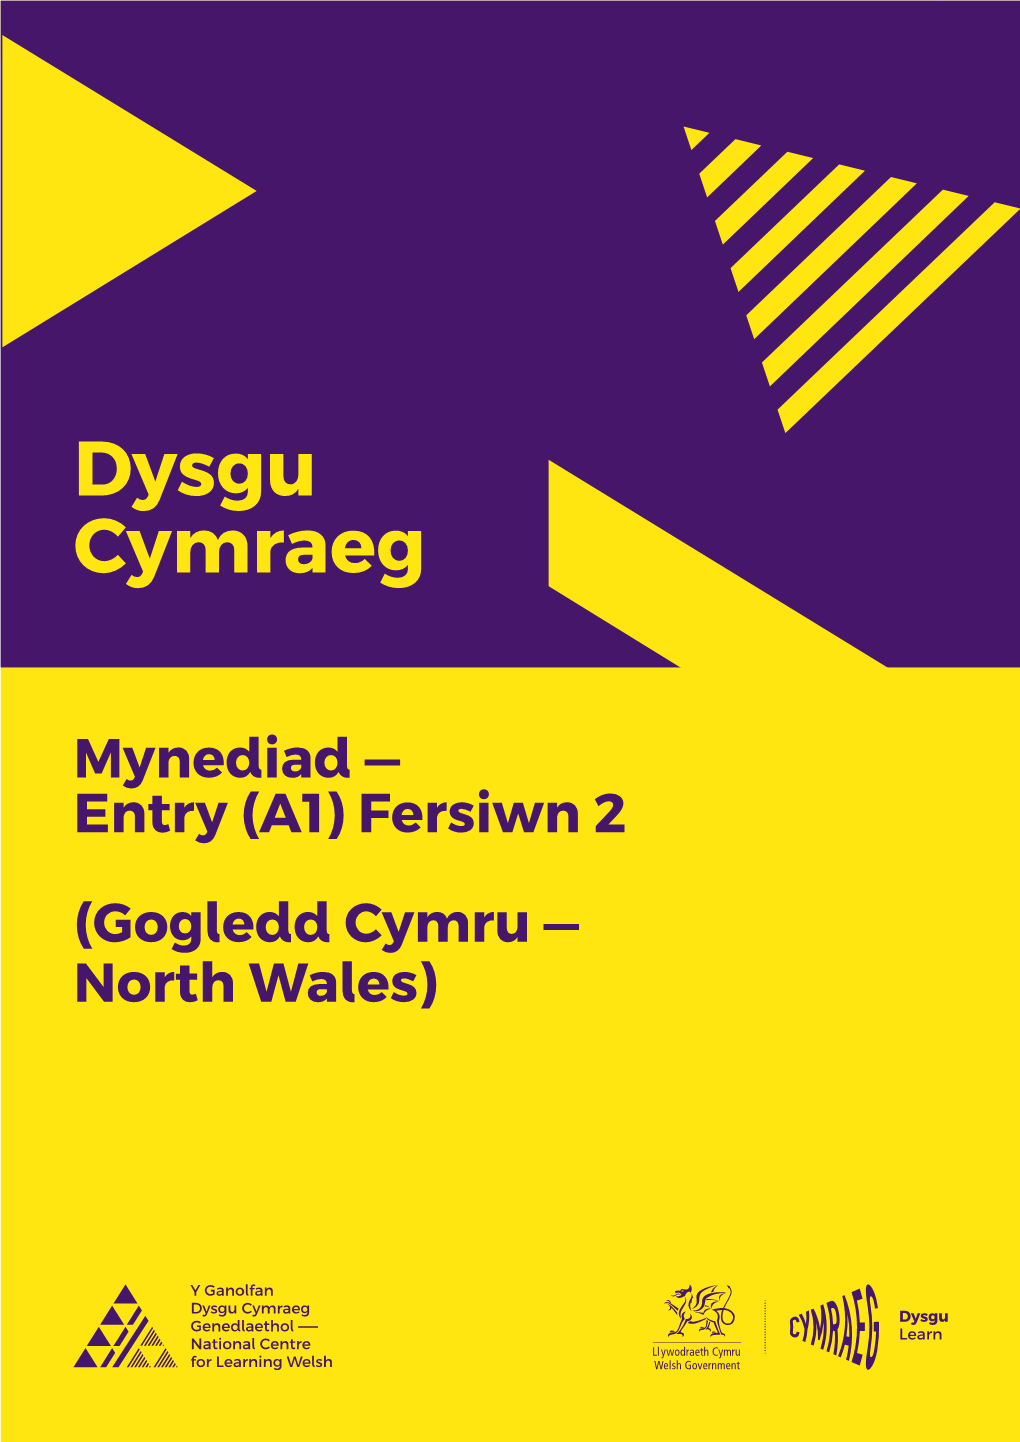 Mynediad — Entry (A1) Fersiwn 2 (Gogledd Cymru — North Wales) 2